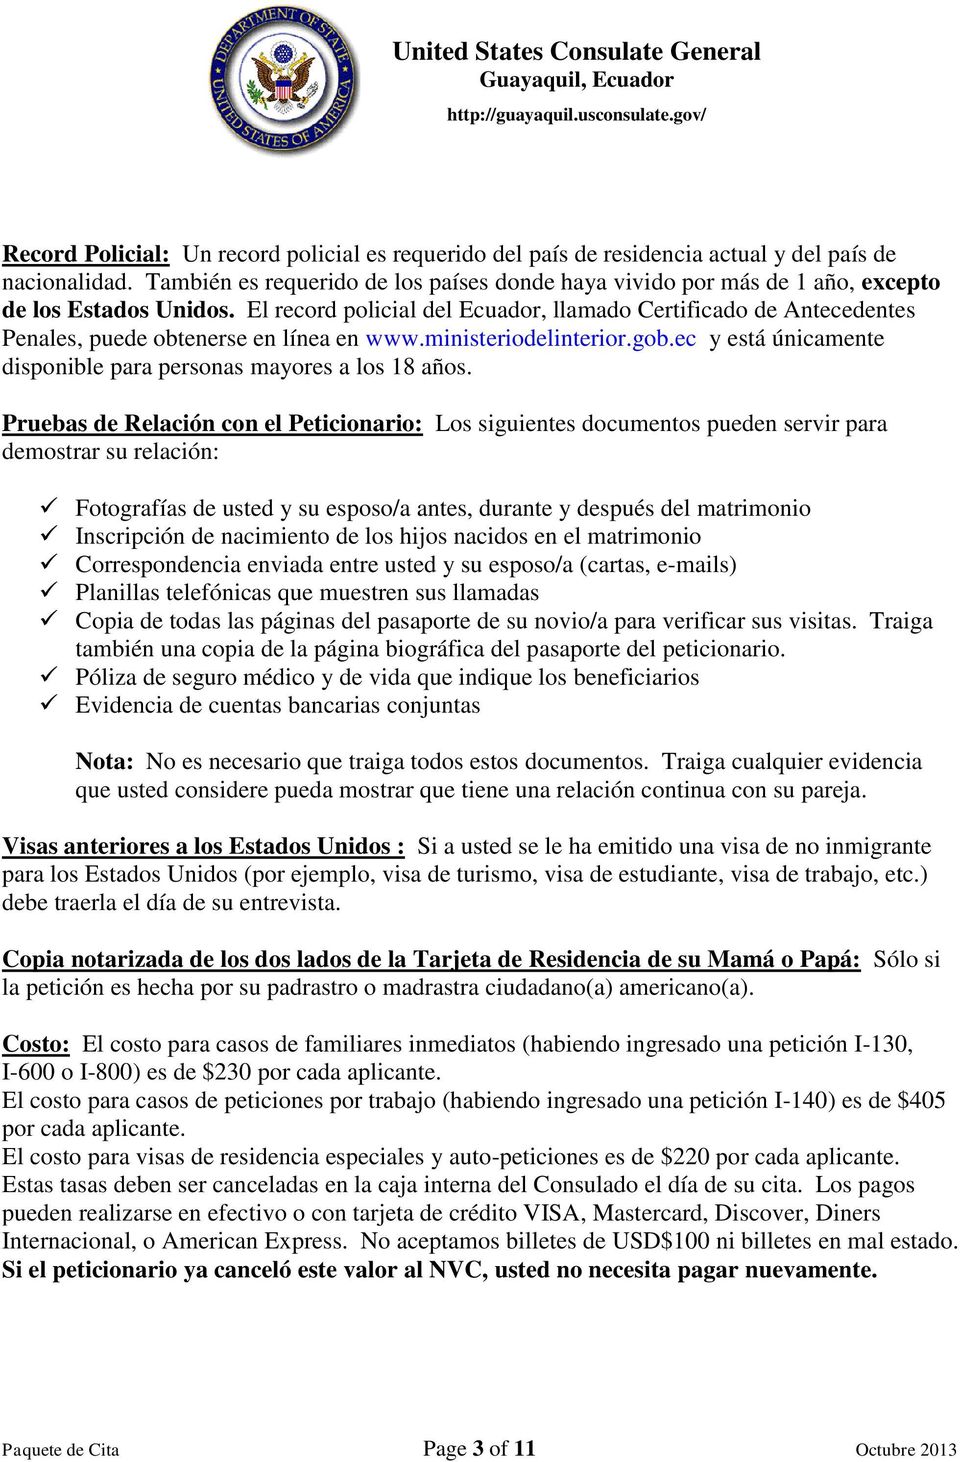 El record policial del Ecuador, llamado Certificado de Antecedentes Penales, puede obtenerse en línea en www.ministeriodelinterior.gob.